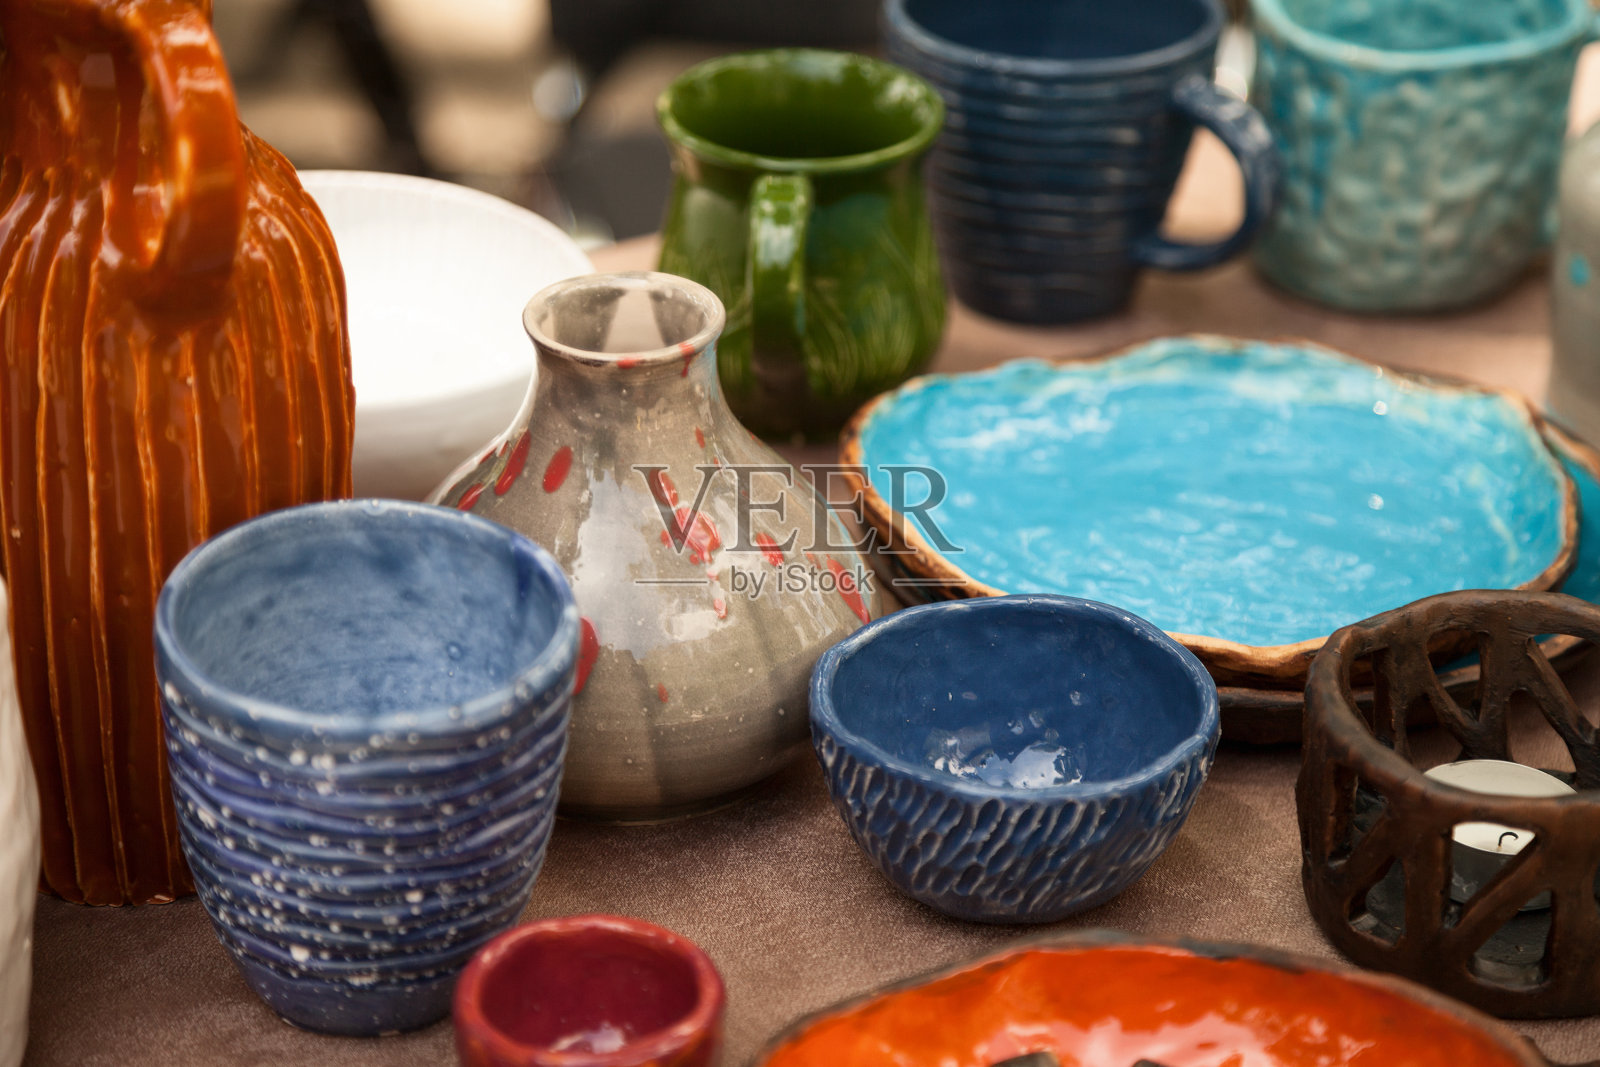 陶器店有很多手工制作的餐具——陶瓷杯、盘子照片摄影图片